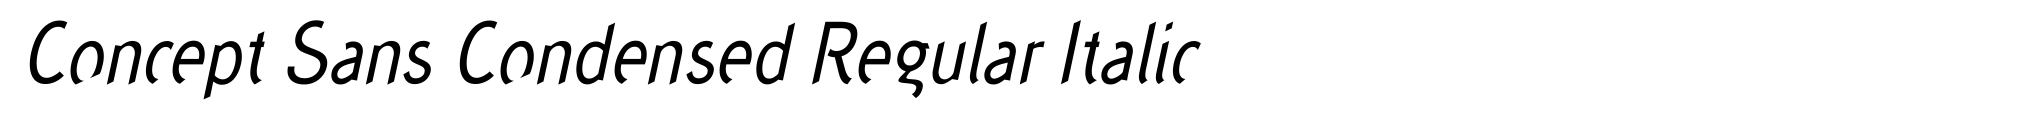 Concept Sans Condensed Regular Italic image